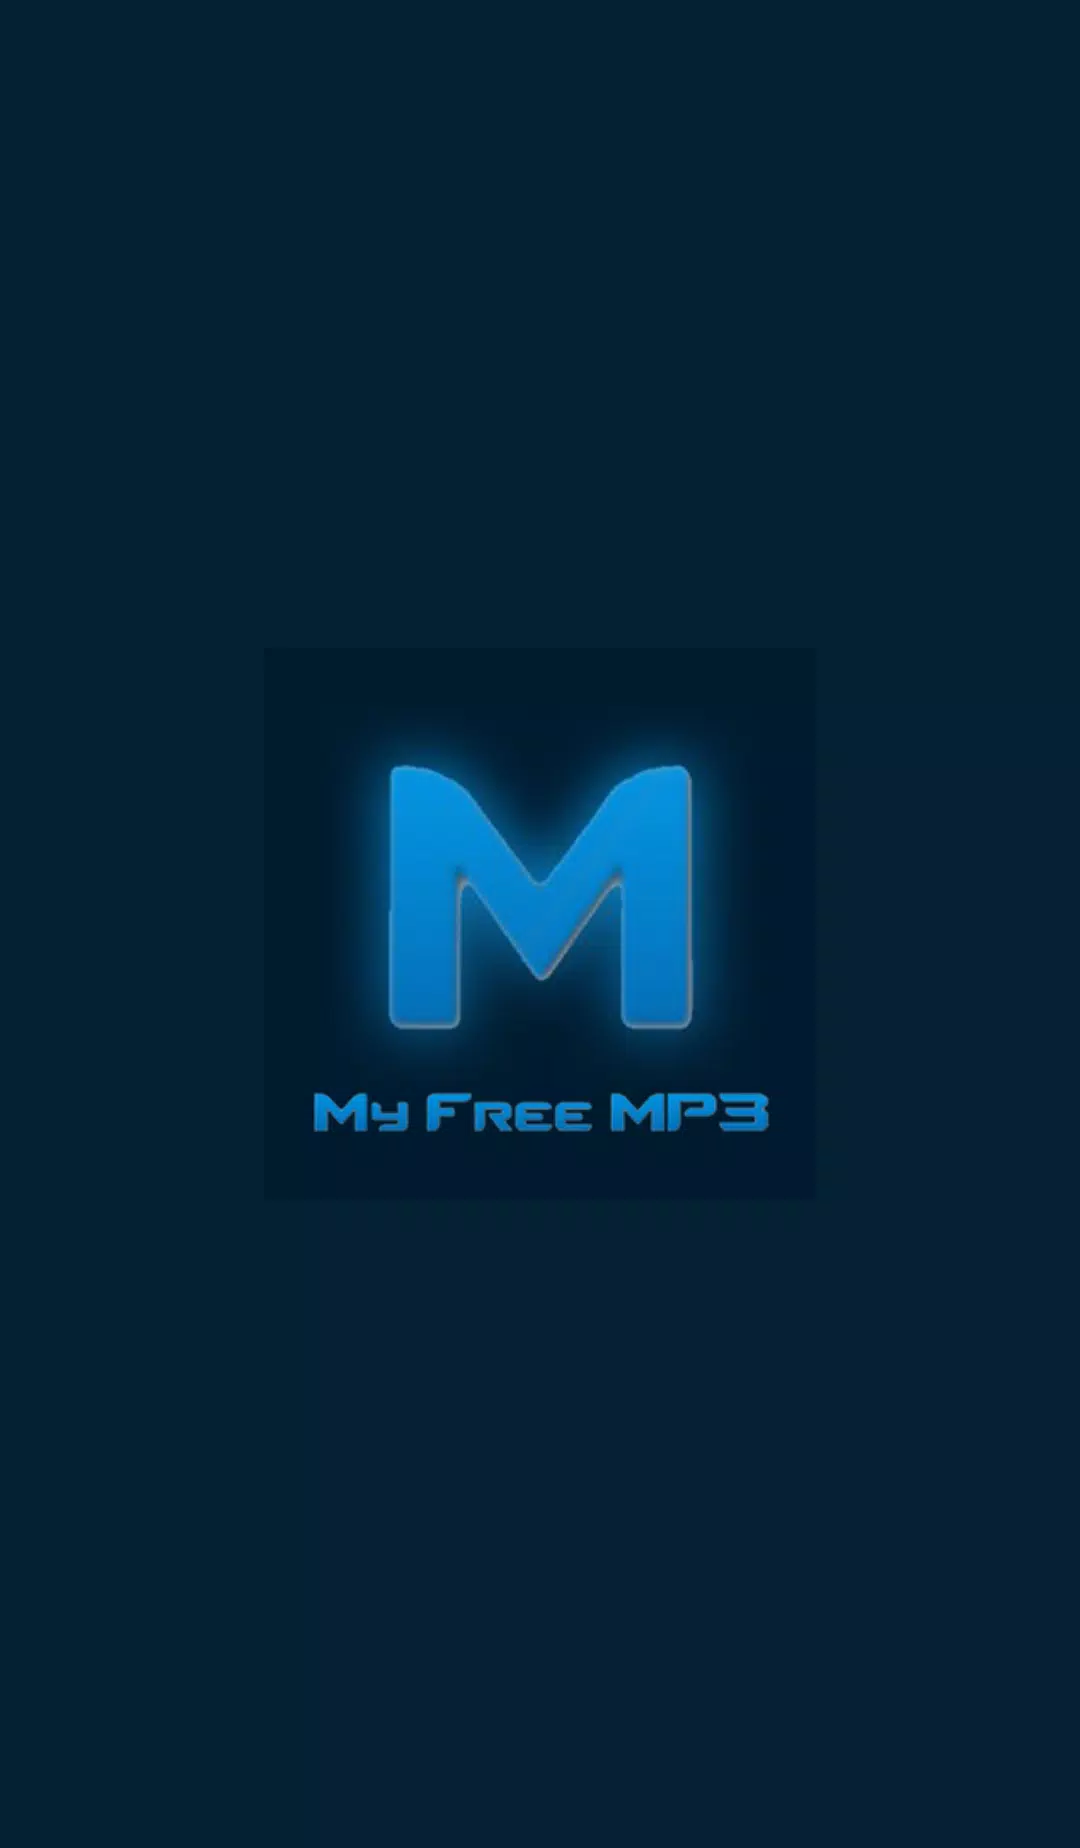 My Free MP3 - Music Download Android के लिए APK डाउनलोड करें